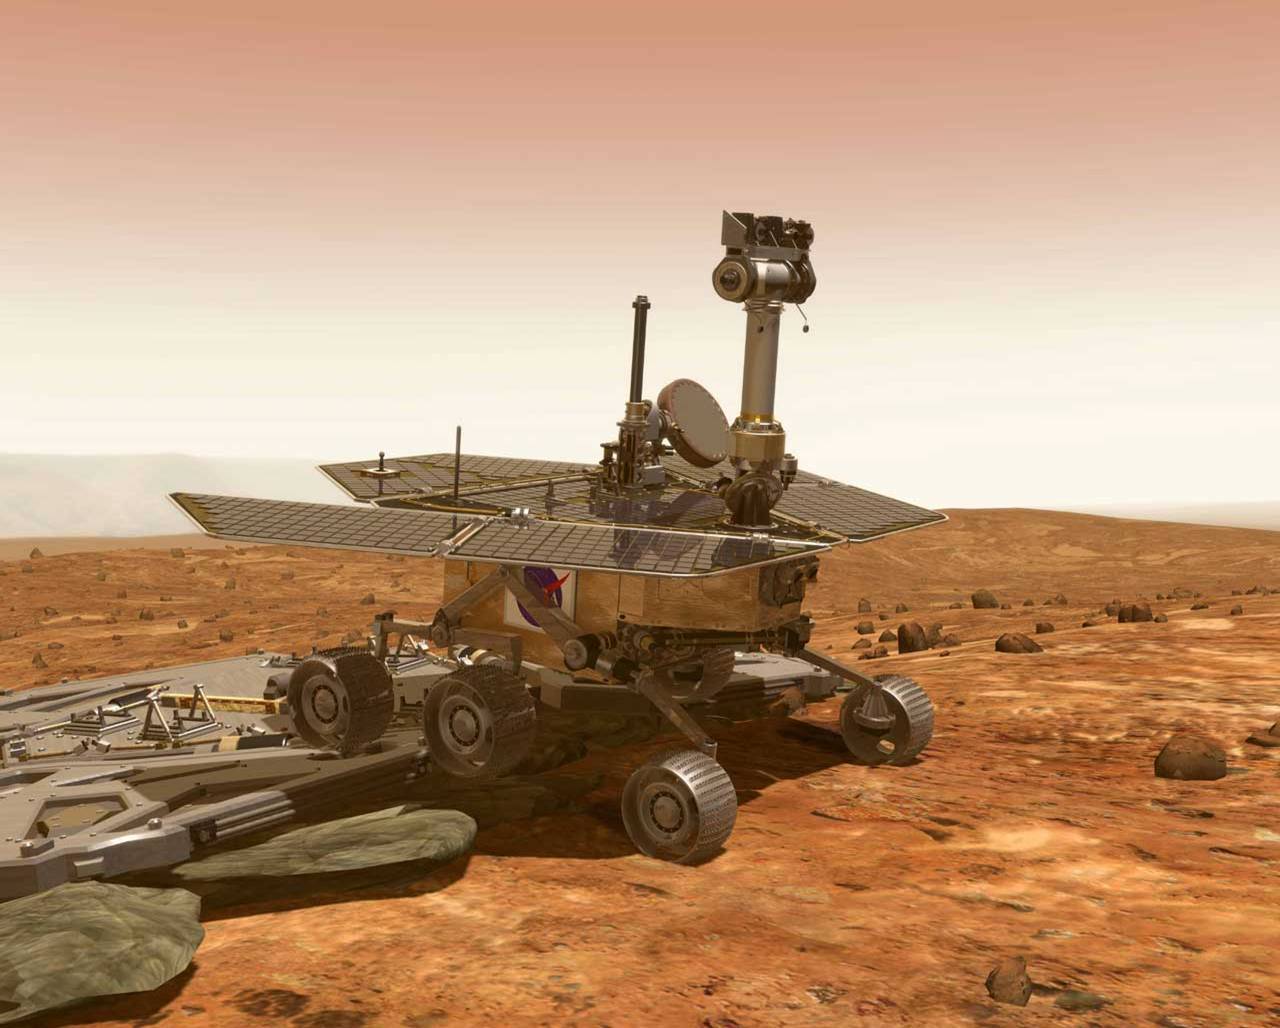 Agencias espaciales buscan traer a la Tierra muestras de Marte